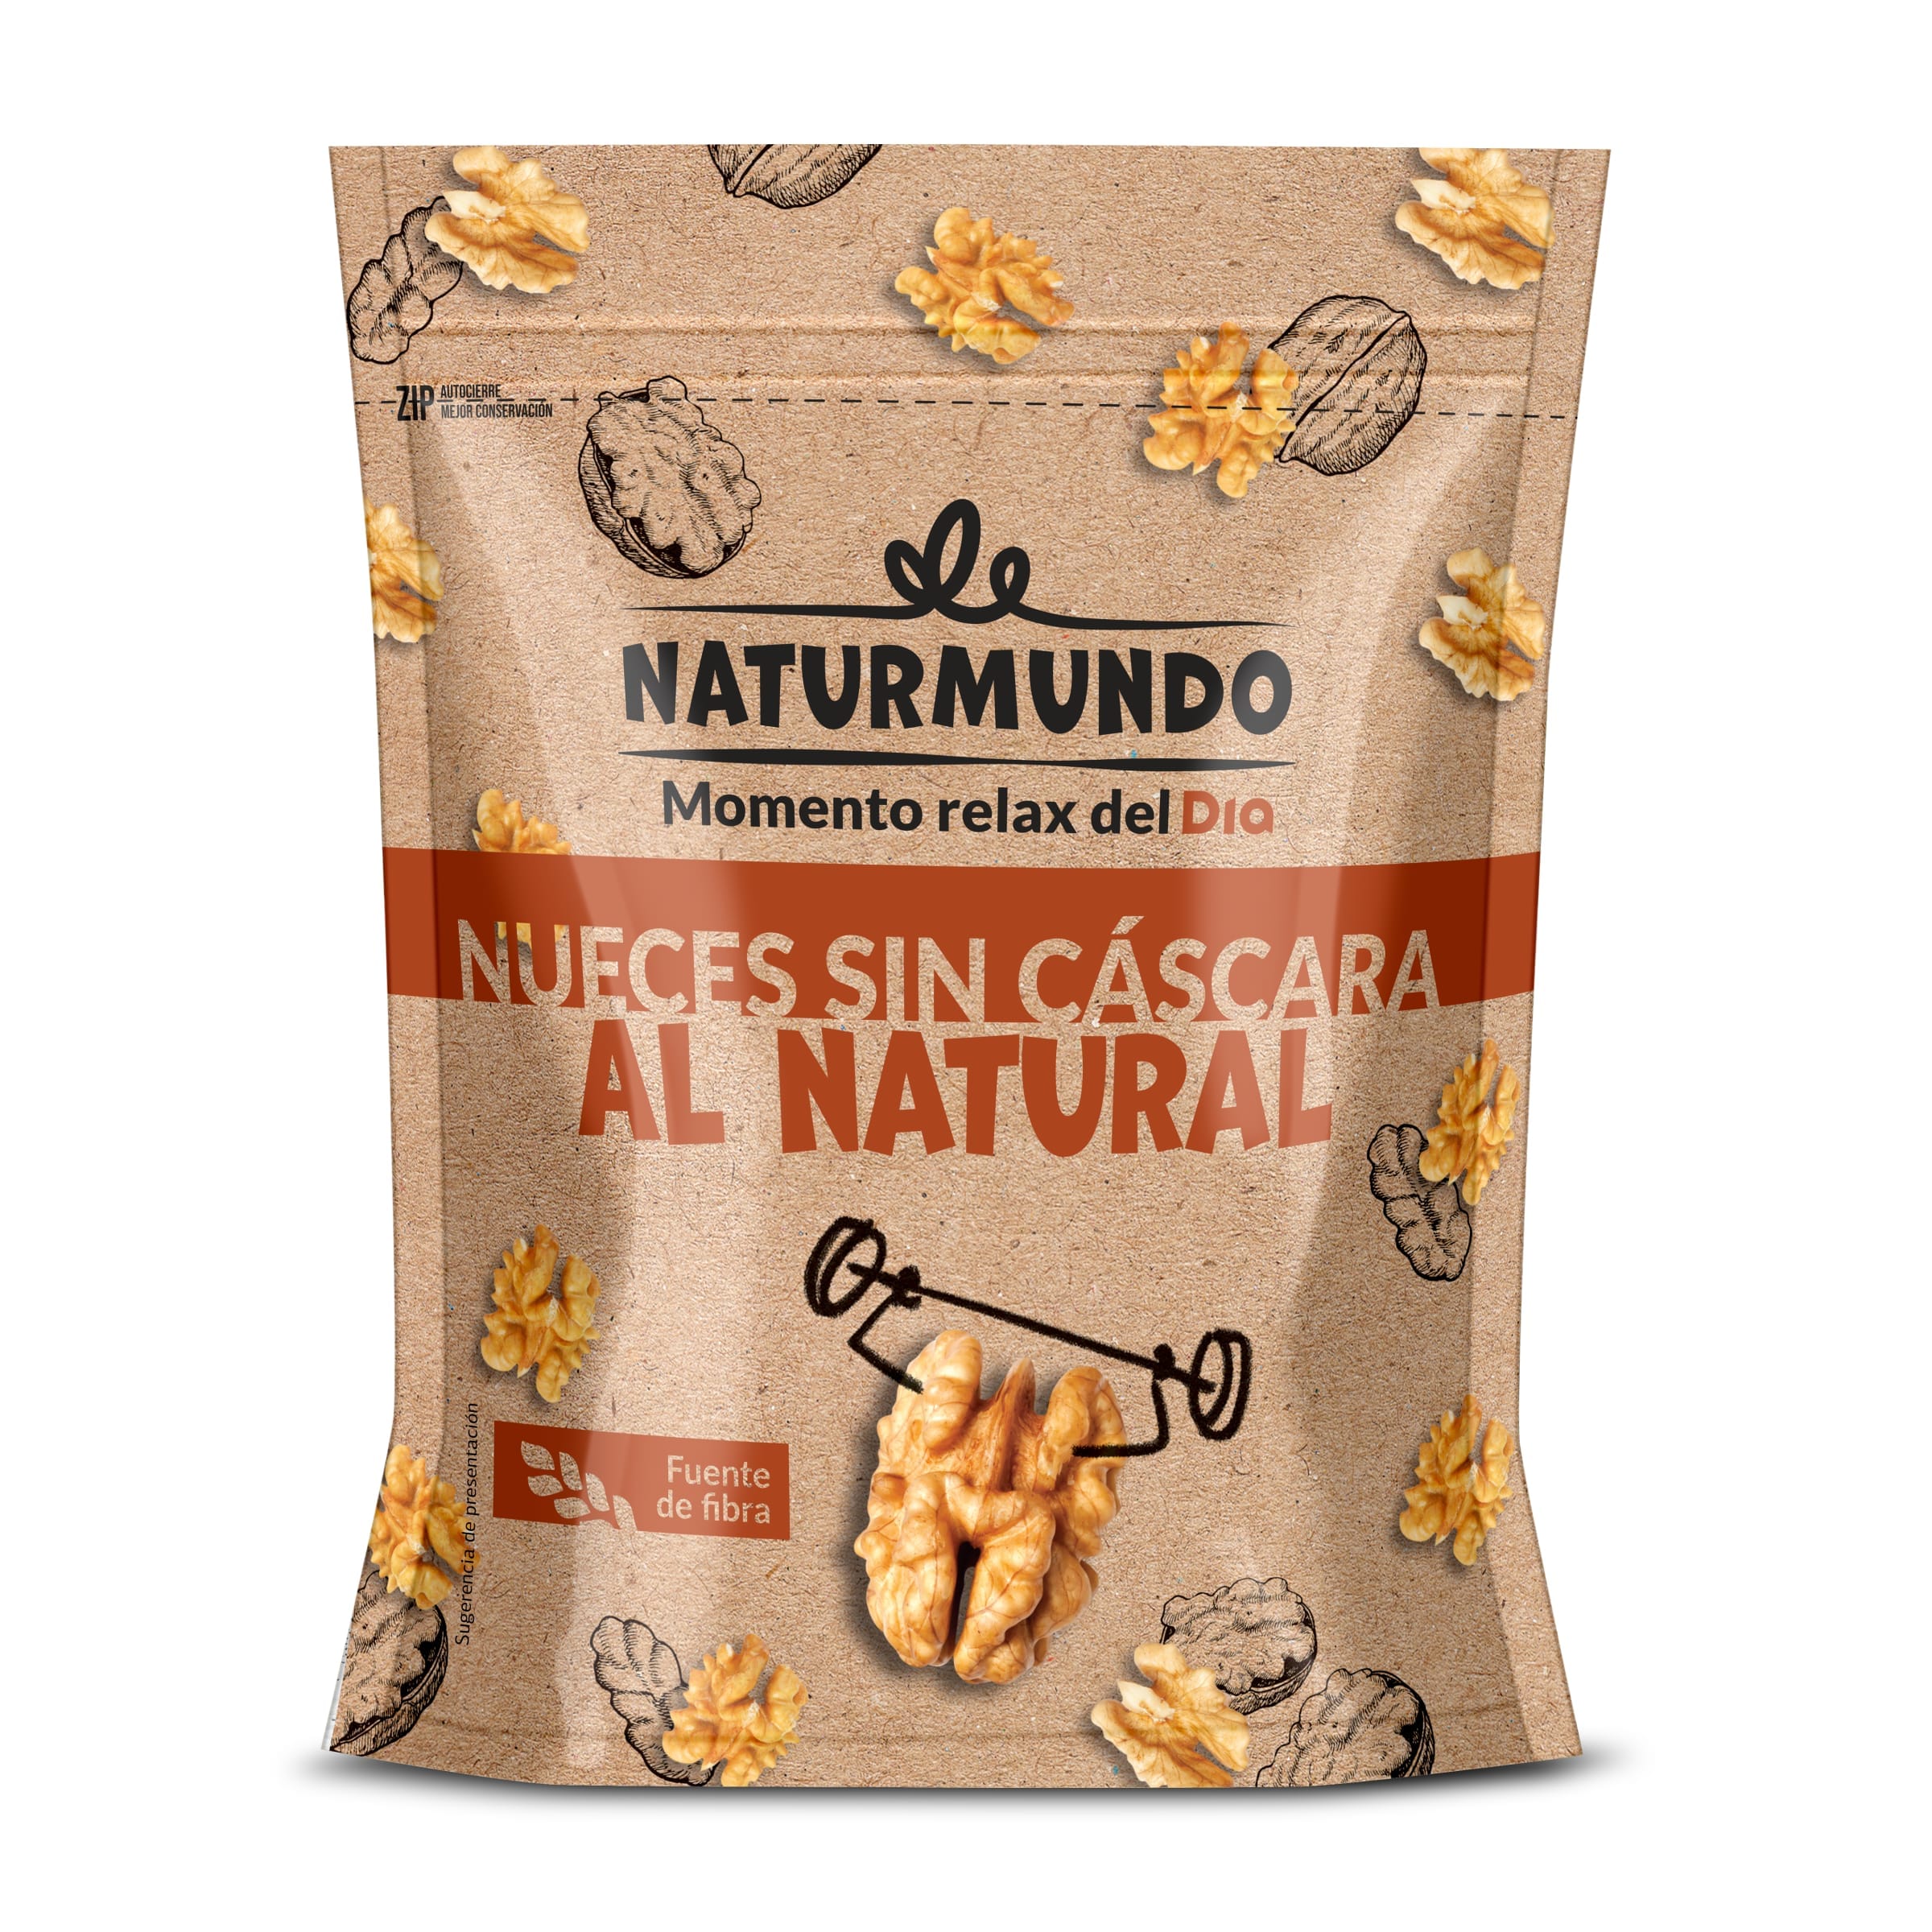 Nueces sin cáscara al natural NATURMUNDO BOLSA 200 GR - Supermercados DIA